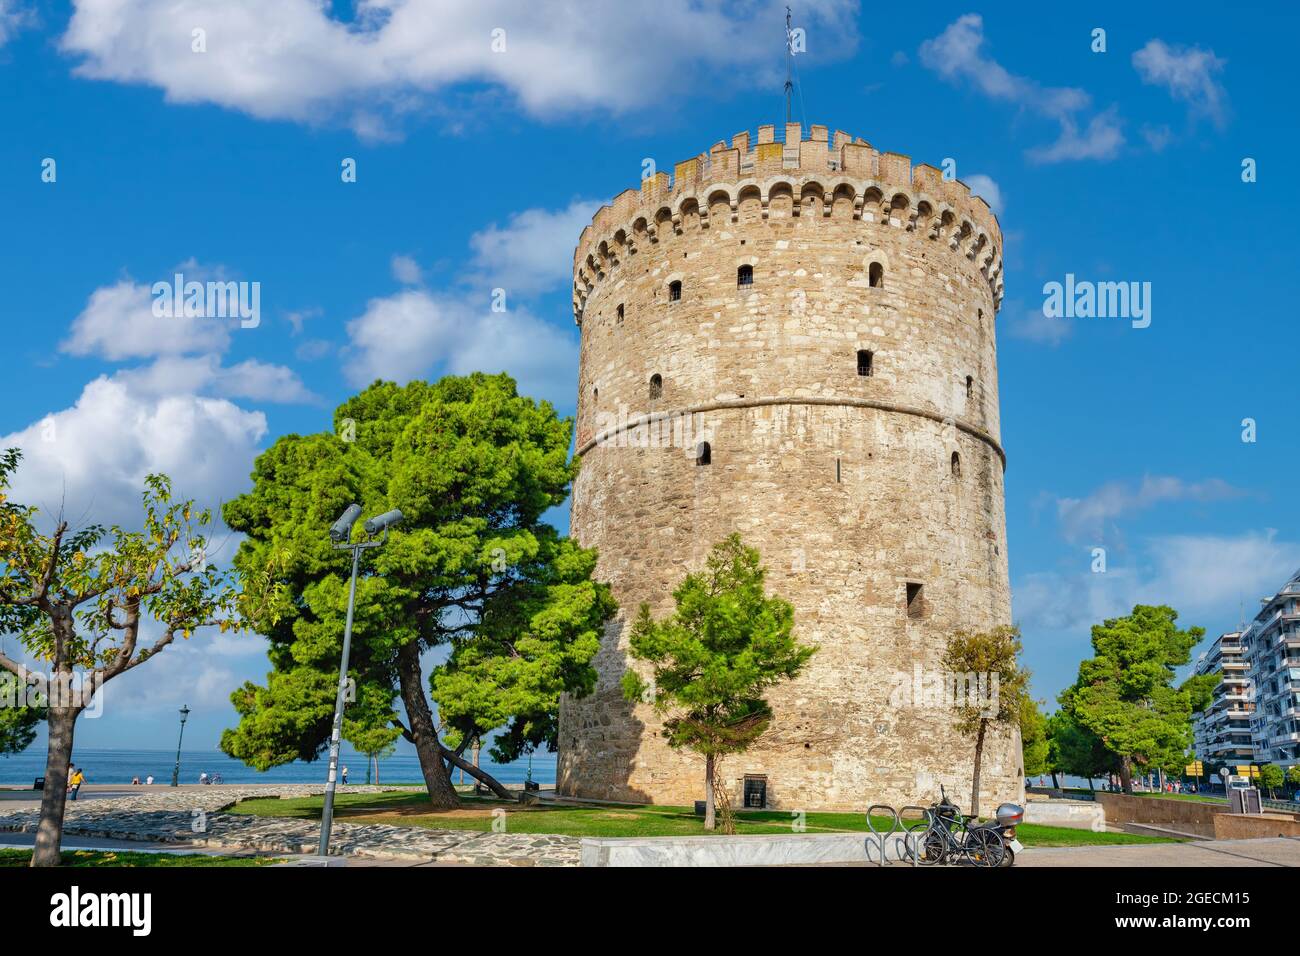 Vue sur la Tour Blanche historique sur la promenade de la mer à Thessalonique. Grèce Banque D'Images